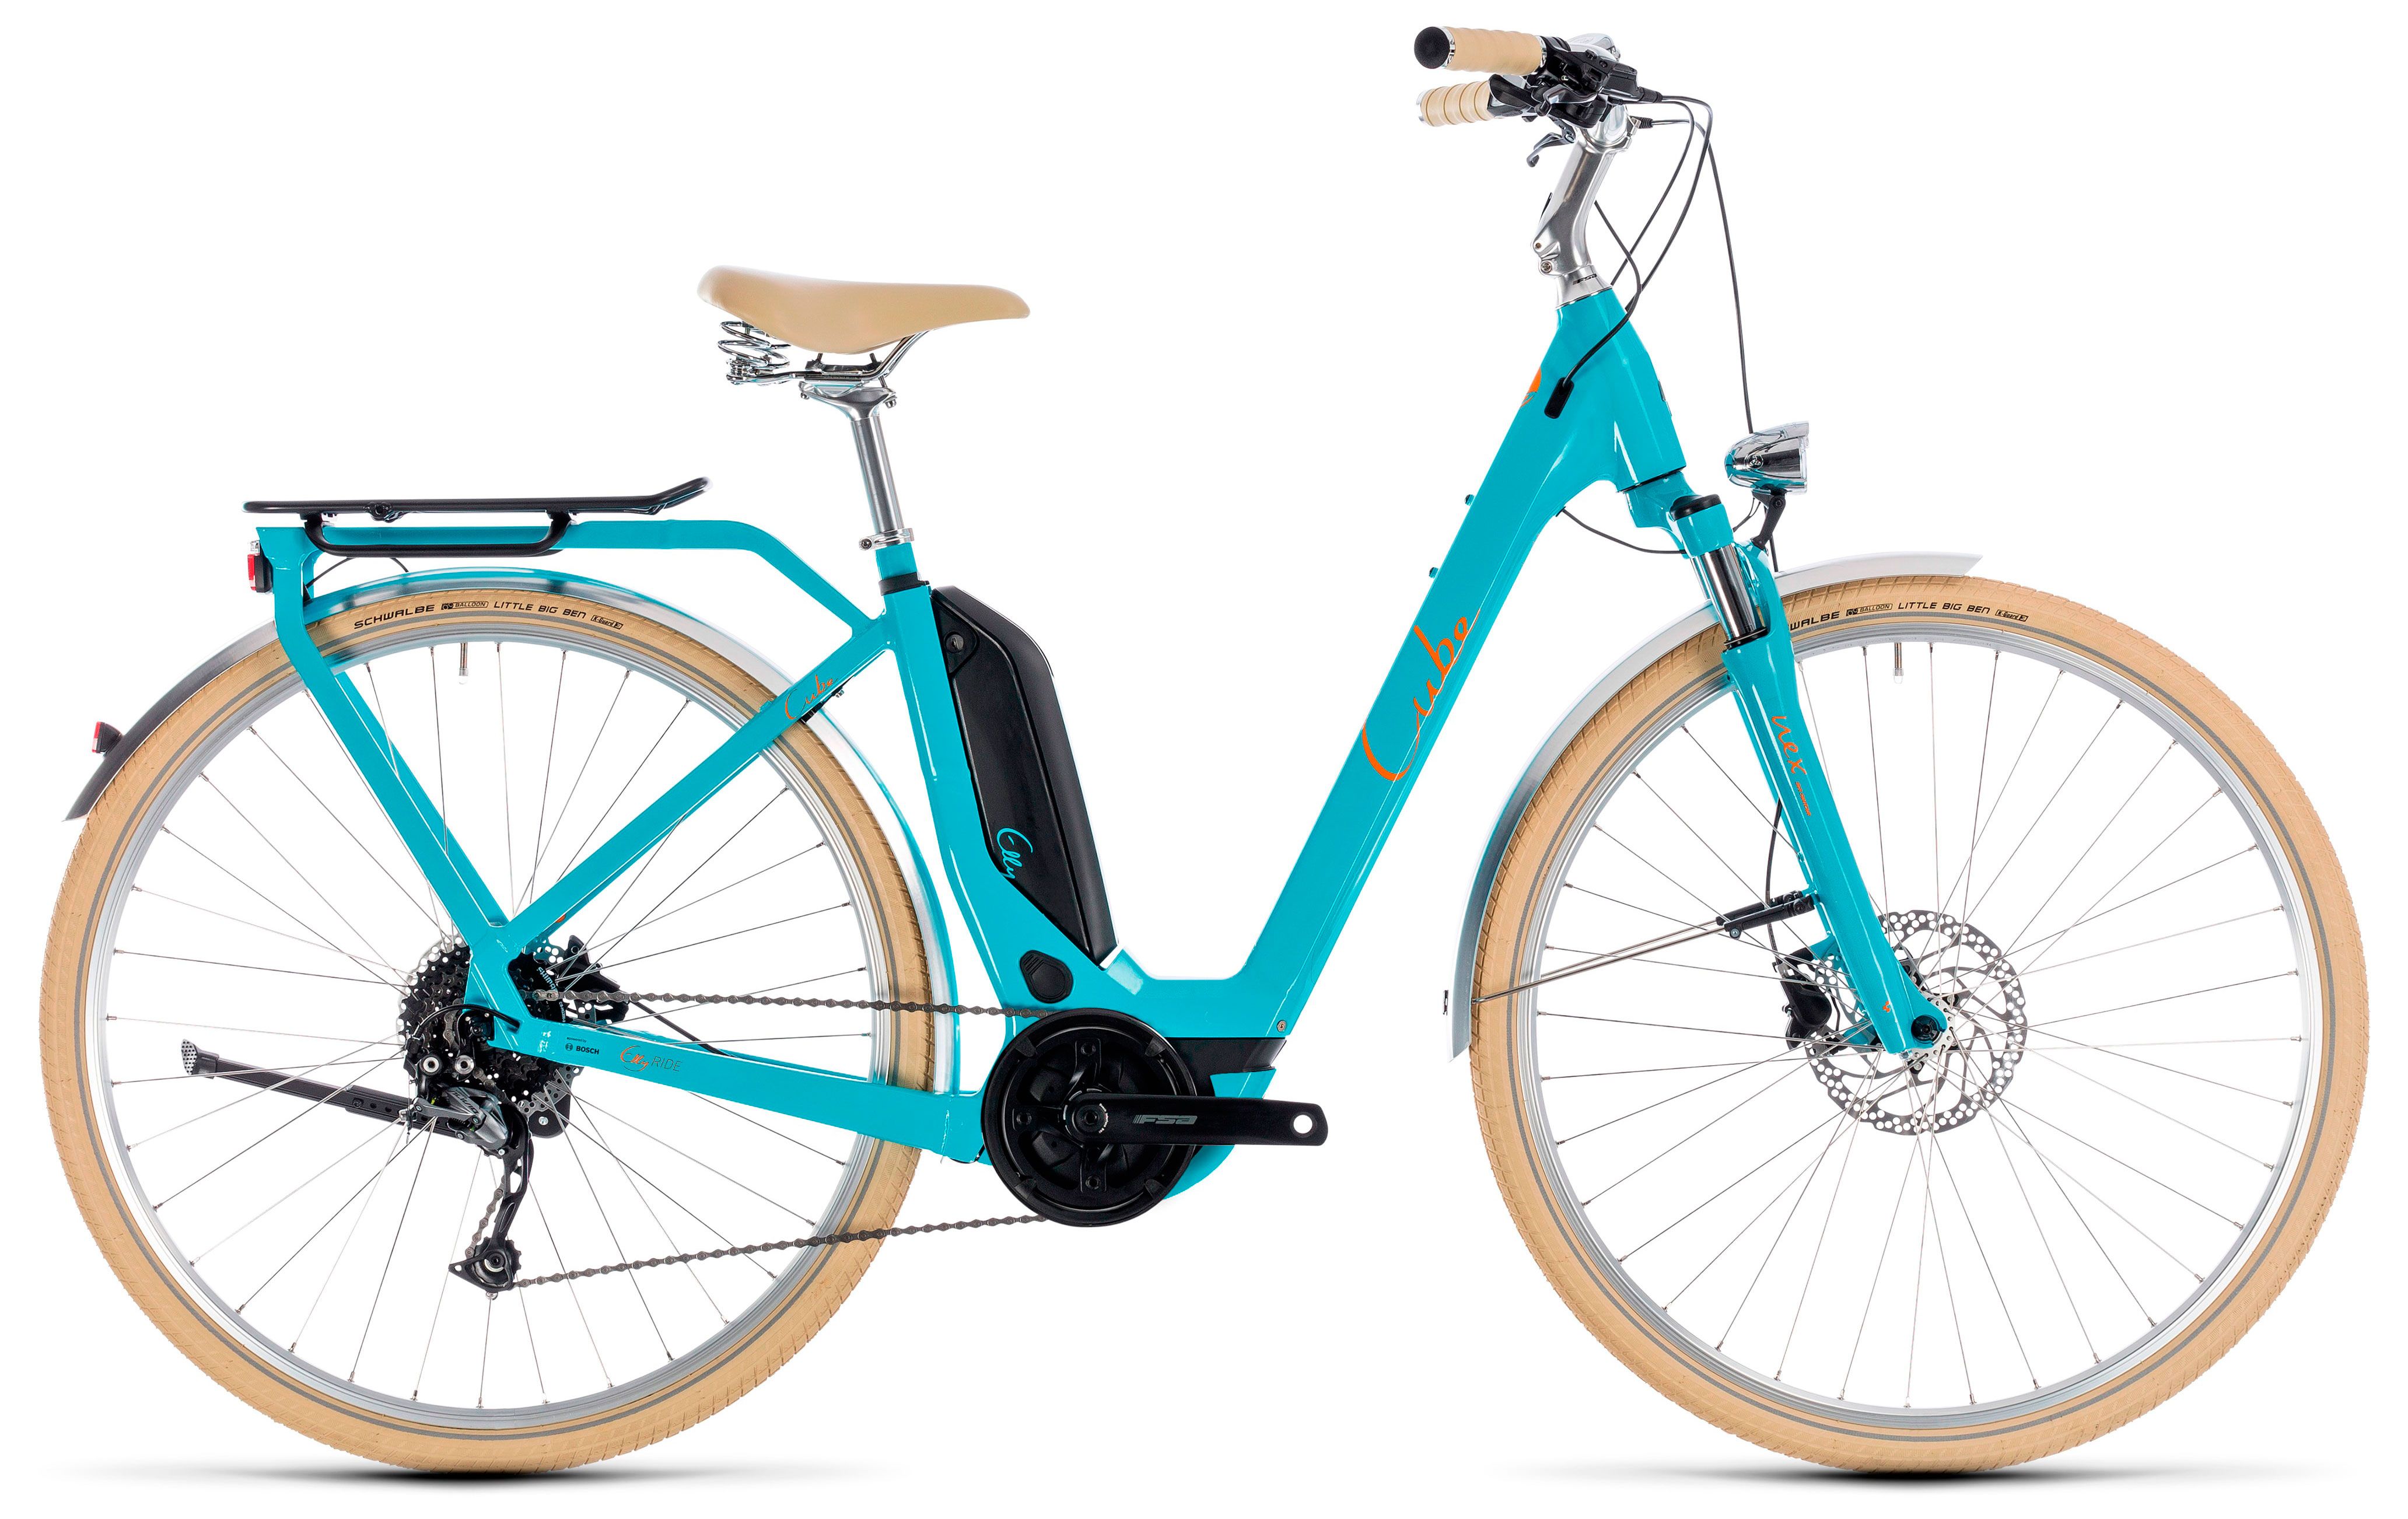  Отзывы о Трехколесный детский велосипед Cube Elly Ride Hybrid 400 2018